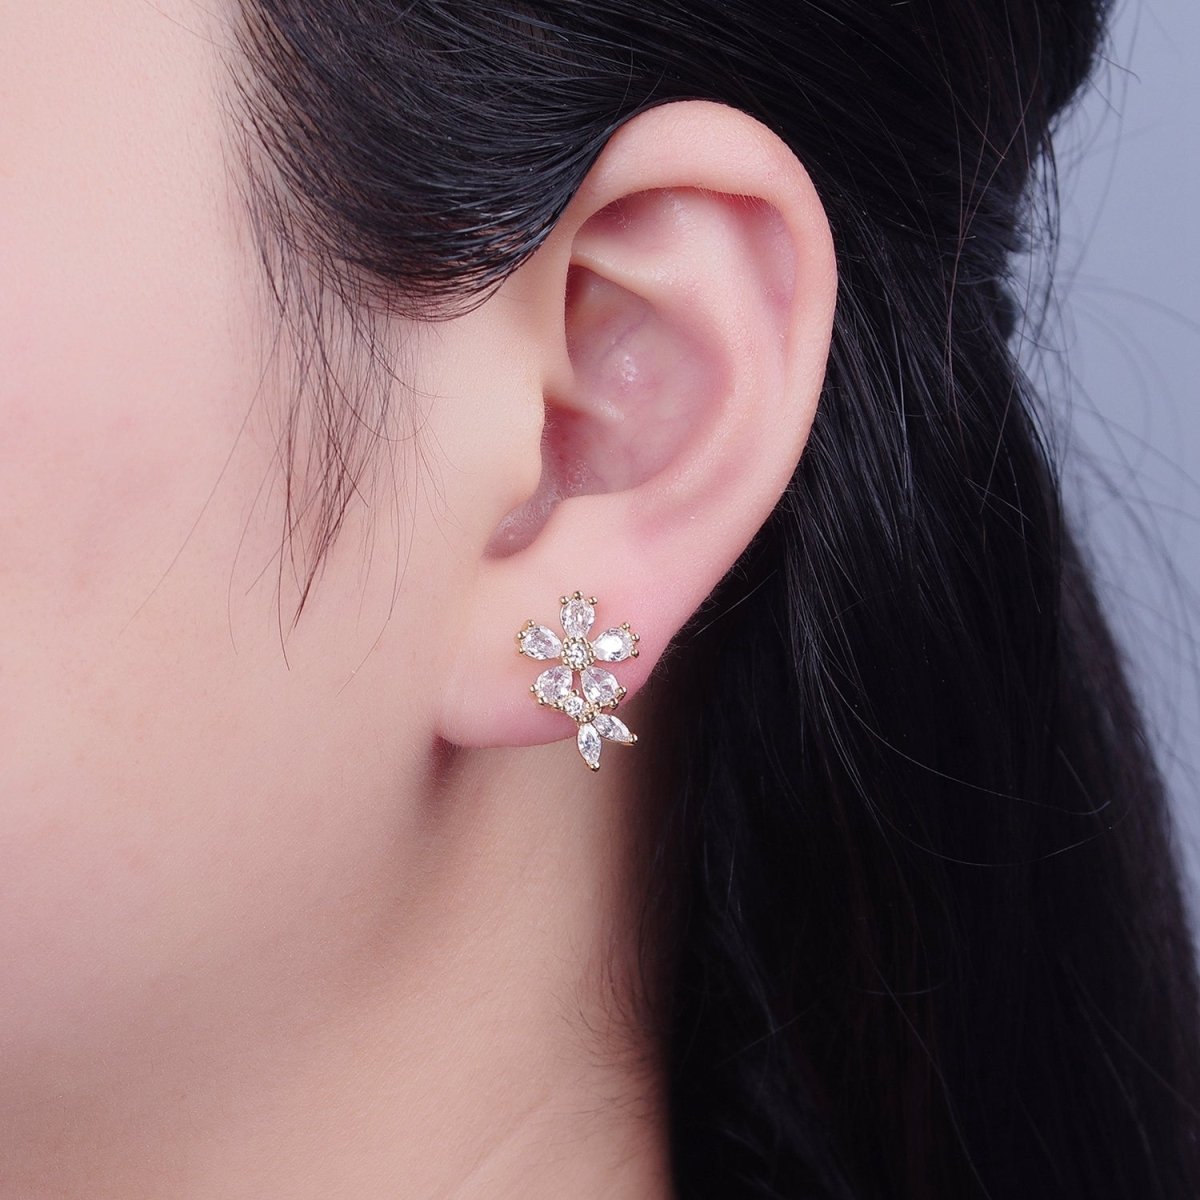 Dainty Gold Clear Cz Flower Stud Earring T-459 - DLUXCA